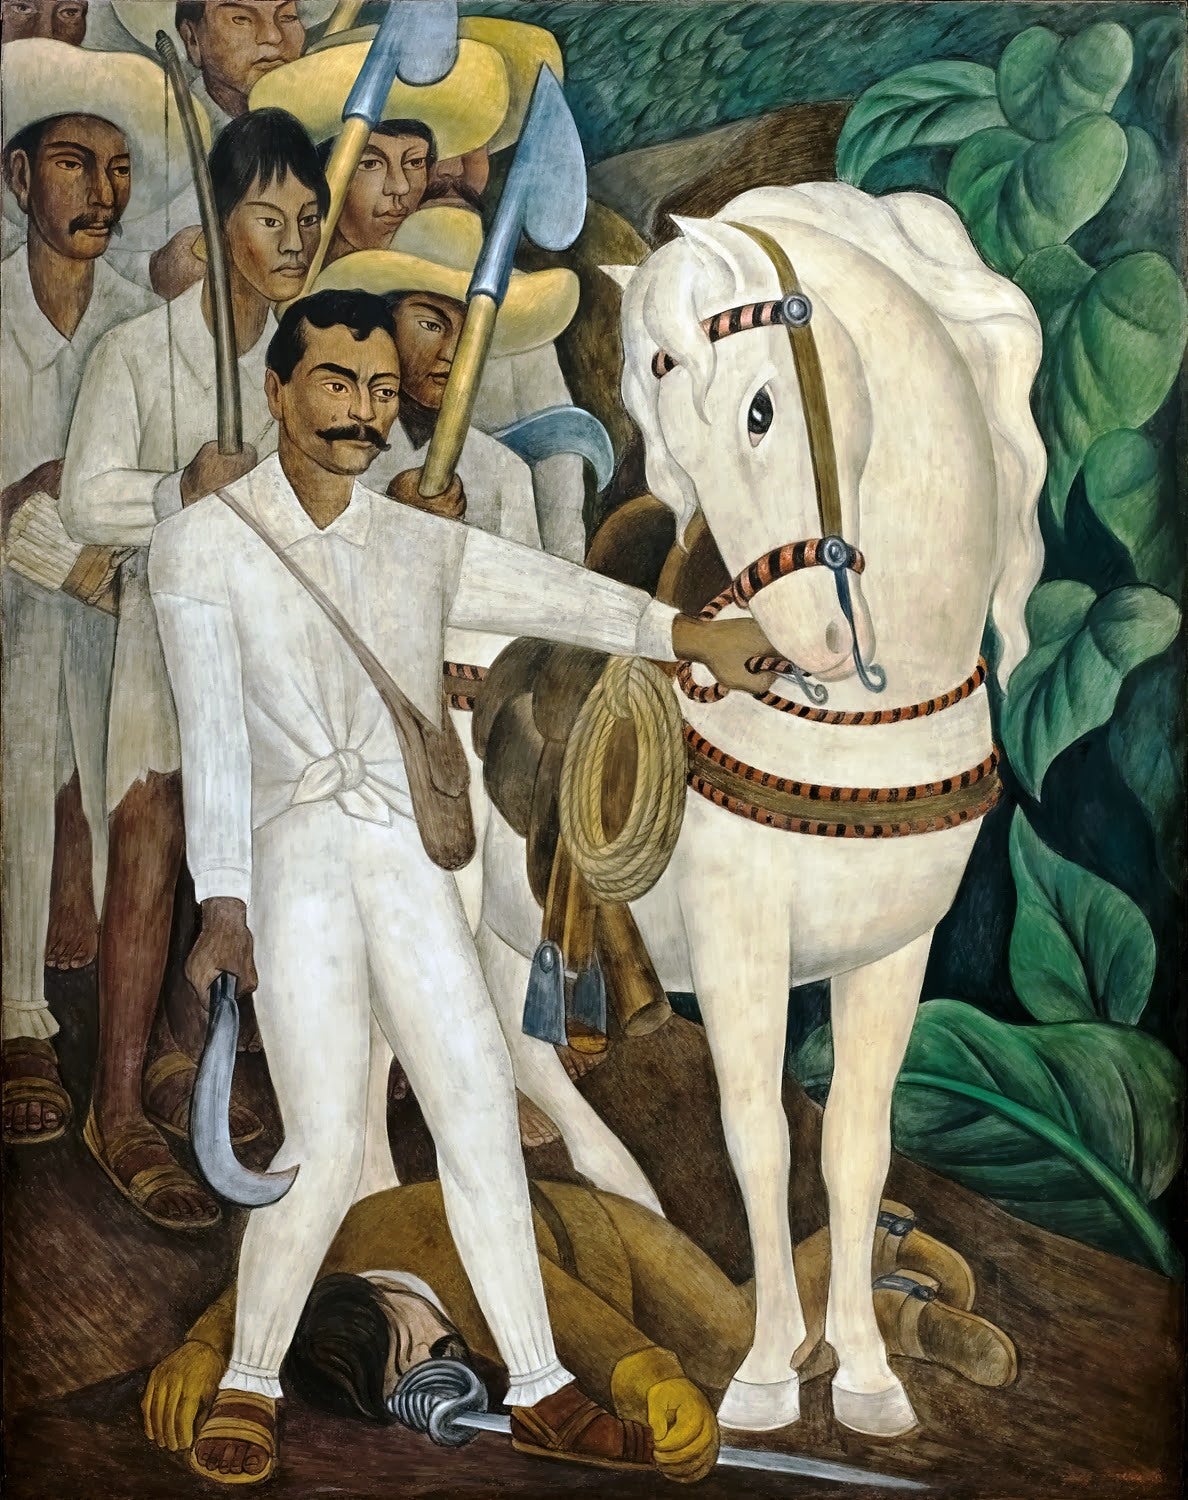 Mural of Emiliano Zapata and Displaced Mexican Campesinos by Diego Rivera, Palacio de Cortés, Cuernavaca, Mexico